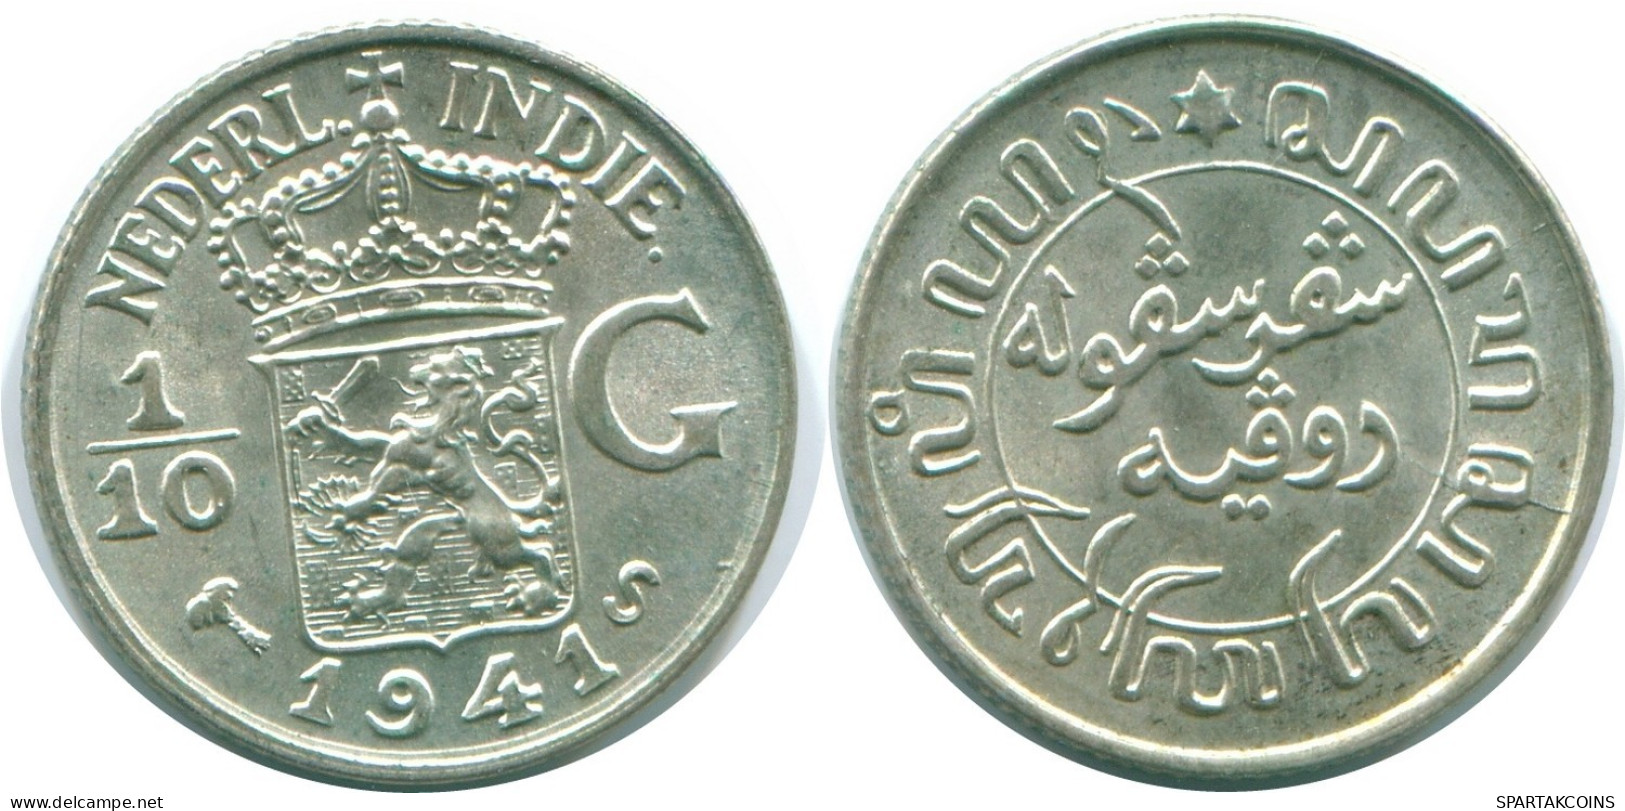 1/10 GULDEN 1941 S NIEDERLANDE OSTINDIEN SILBER Koloniale Münze #NL13613.3.D.A - Niederländisch-Indien